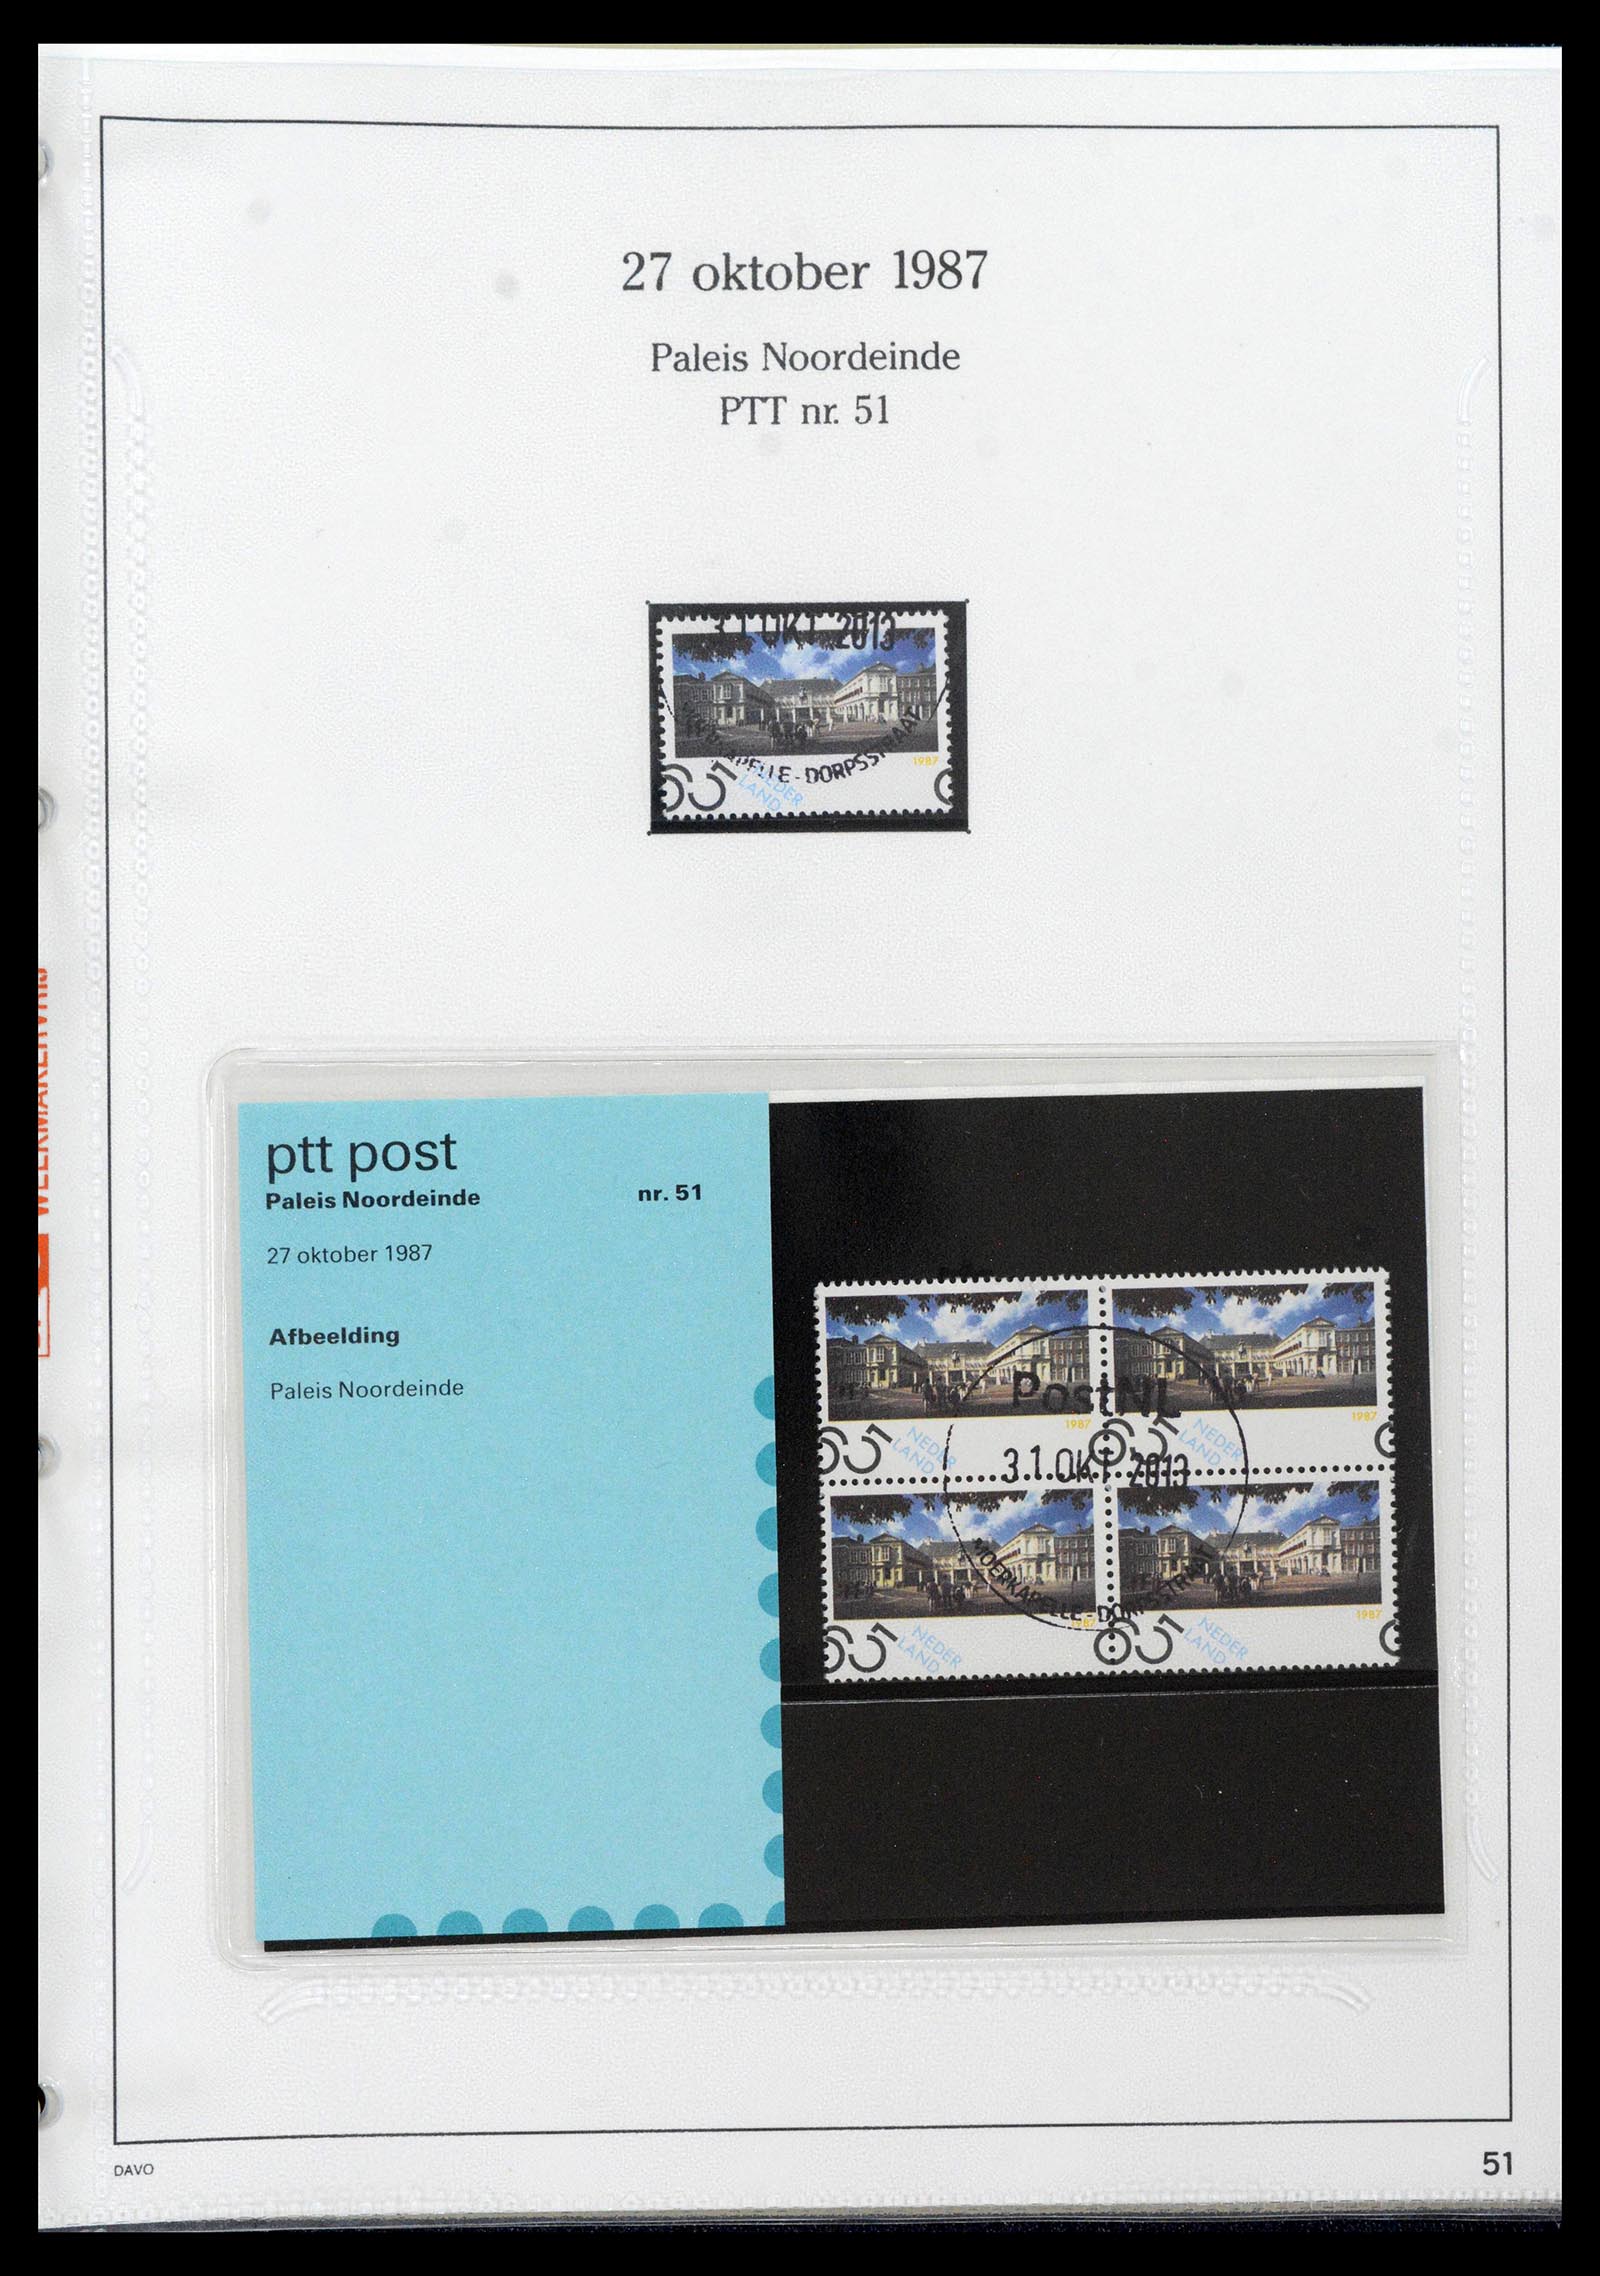 39121 0051 - Stamp collection 39121 Netherlands presentationpacks 1982-2001.